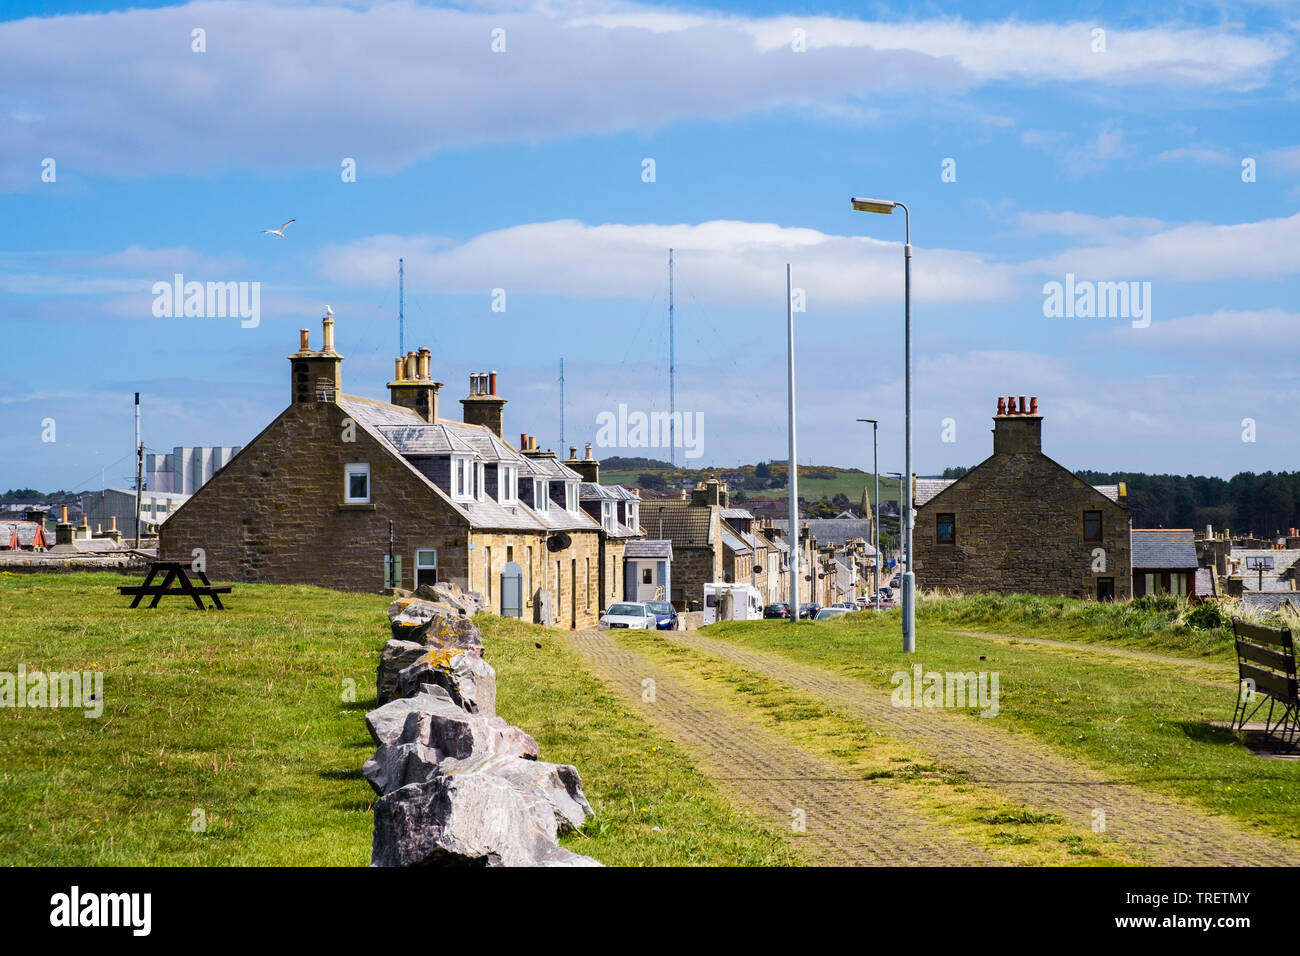 Traditionelle schottische Häuser auf Grant Street im historischen Dorf vom Strand gesehen. Burghead, Moray, Schottland, Großbritannien, Großbritannien Stockfoto